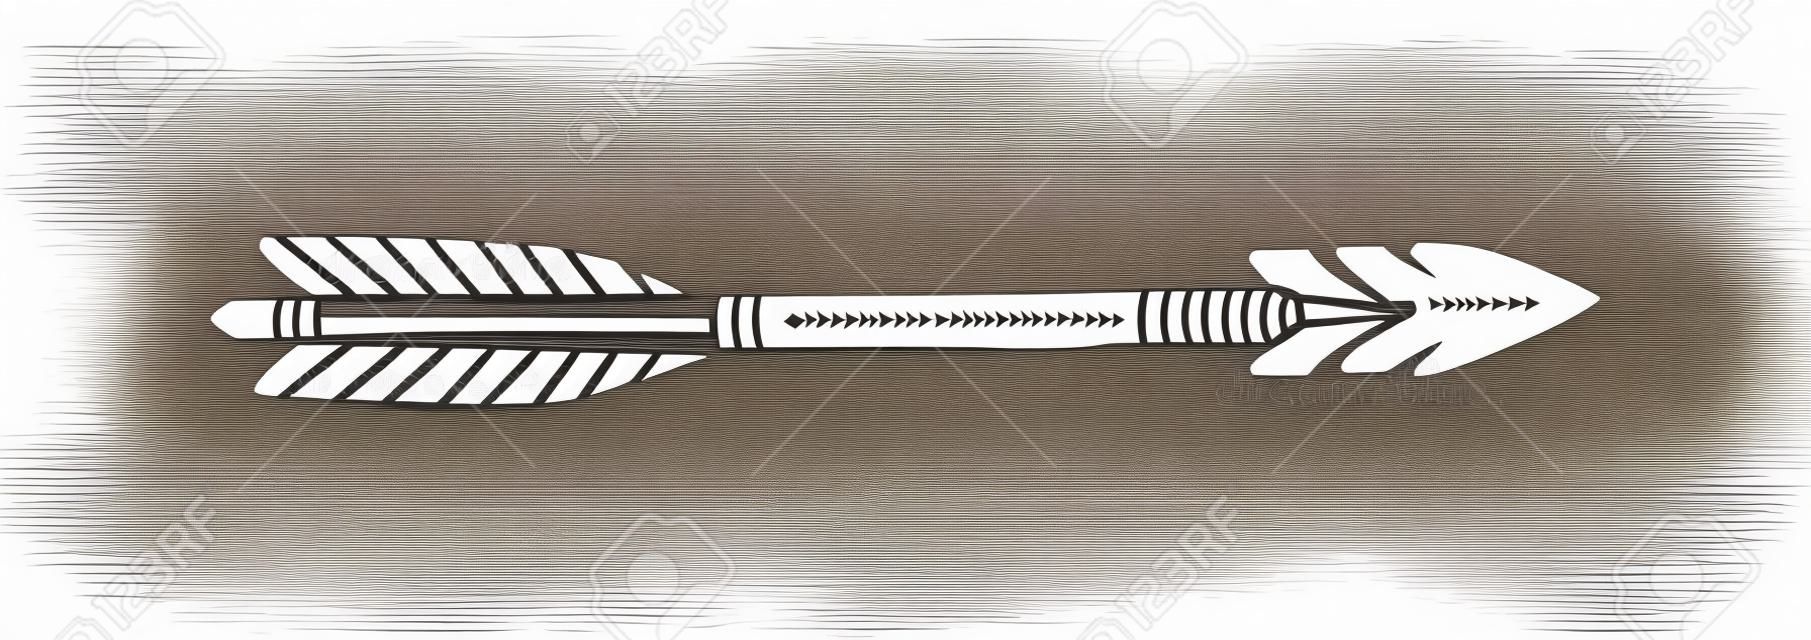 Dibujar a mano silueta Flecha india étnica. Ilustración vectorial de flechas tribales aisladas sobre fondo blanco con textura grunge.